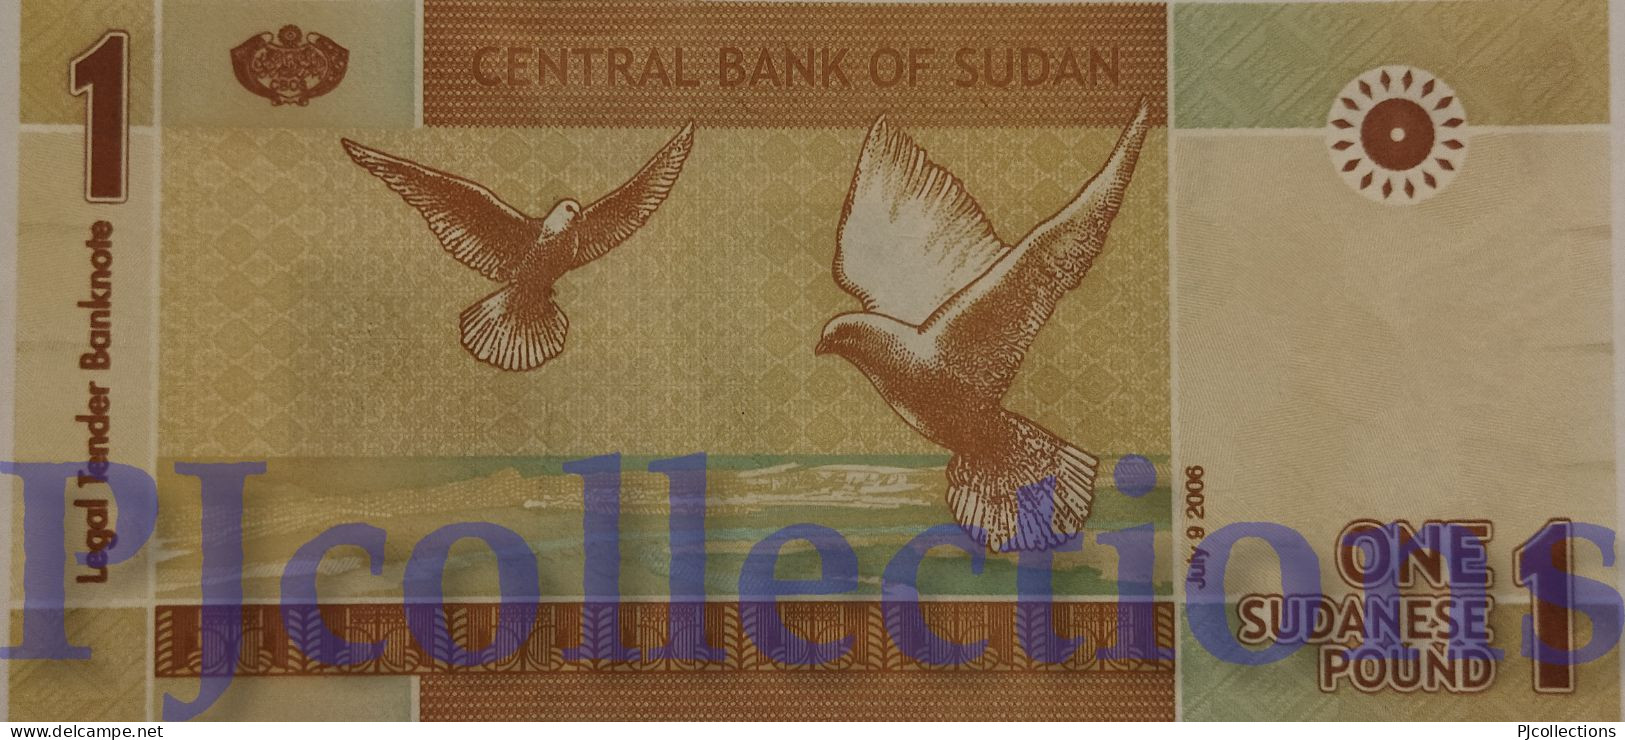 SUDAN 1 DINAR 2006 PICK 64 UNC LOW AND GOOD SERIAL NUMBER "AA00015015" - Sudan